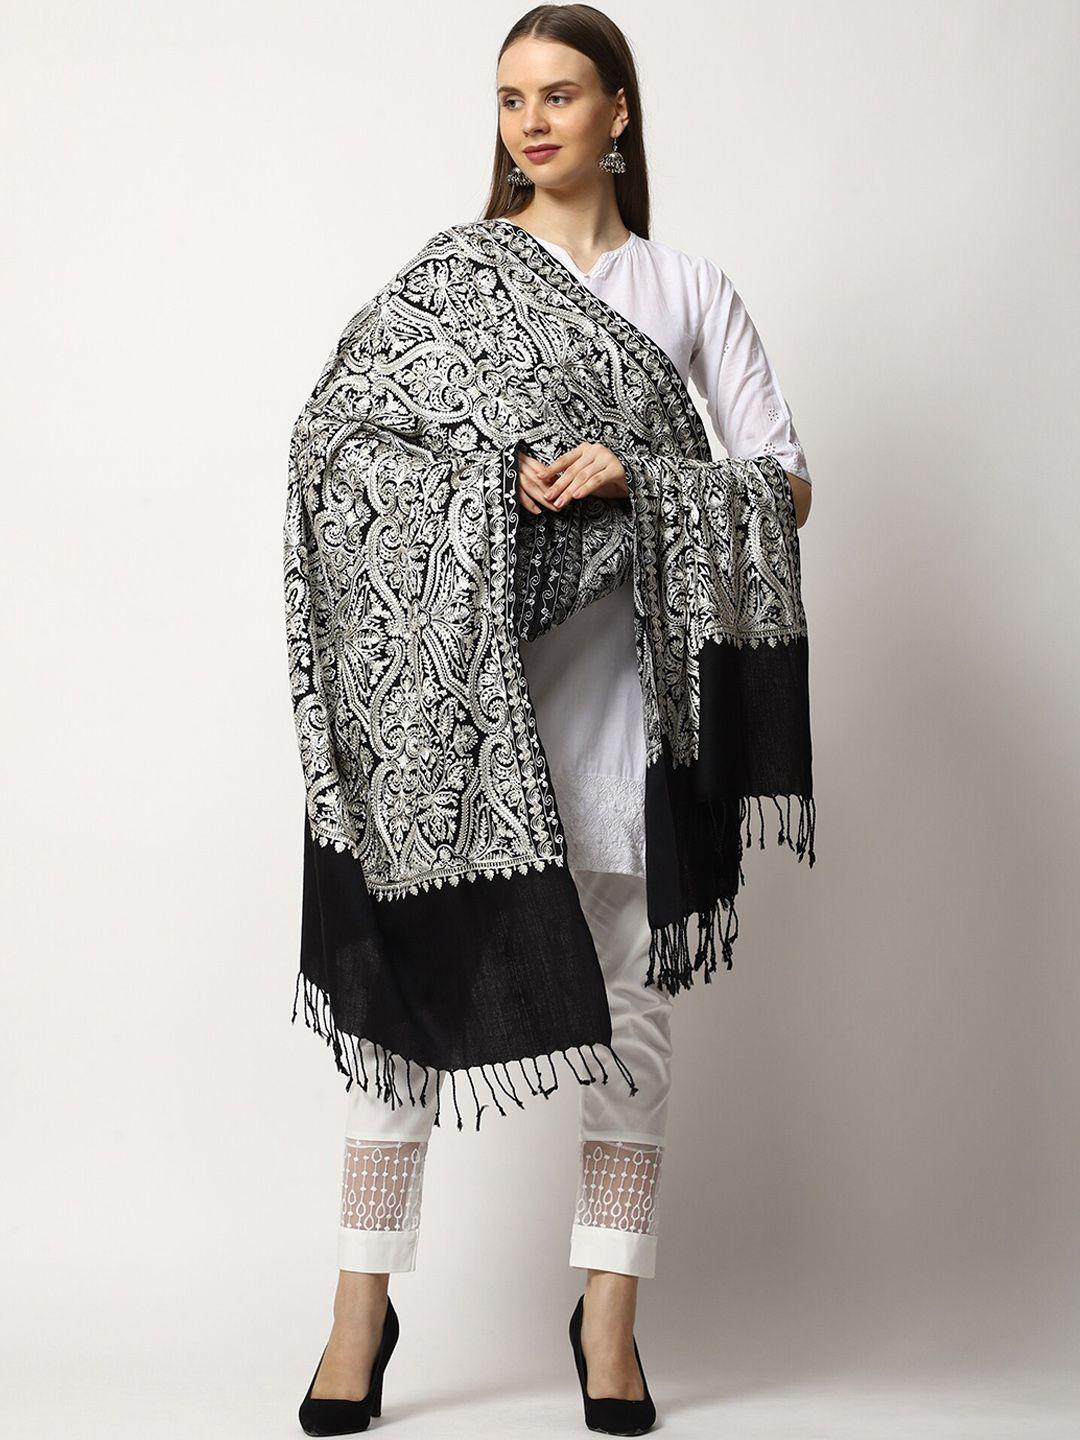 swi stylish embroidered aari work shawl